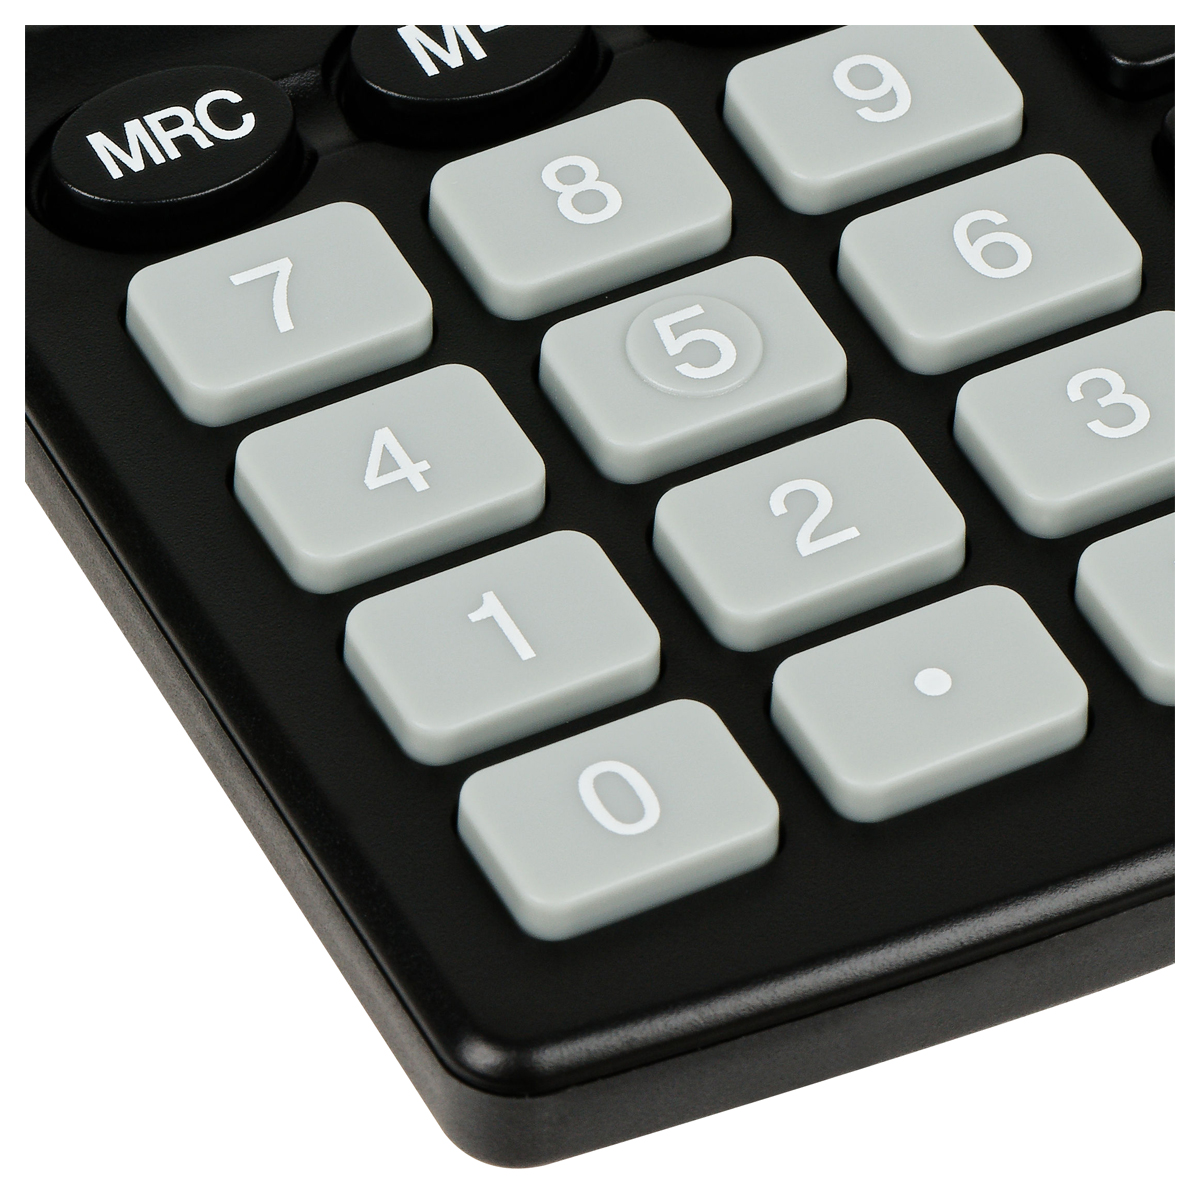 Калькулятор настольный Eleven SDC-805NR, 8 разр., двойное питание, 127*105*21мм,